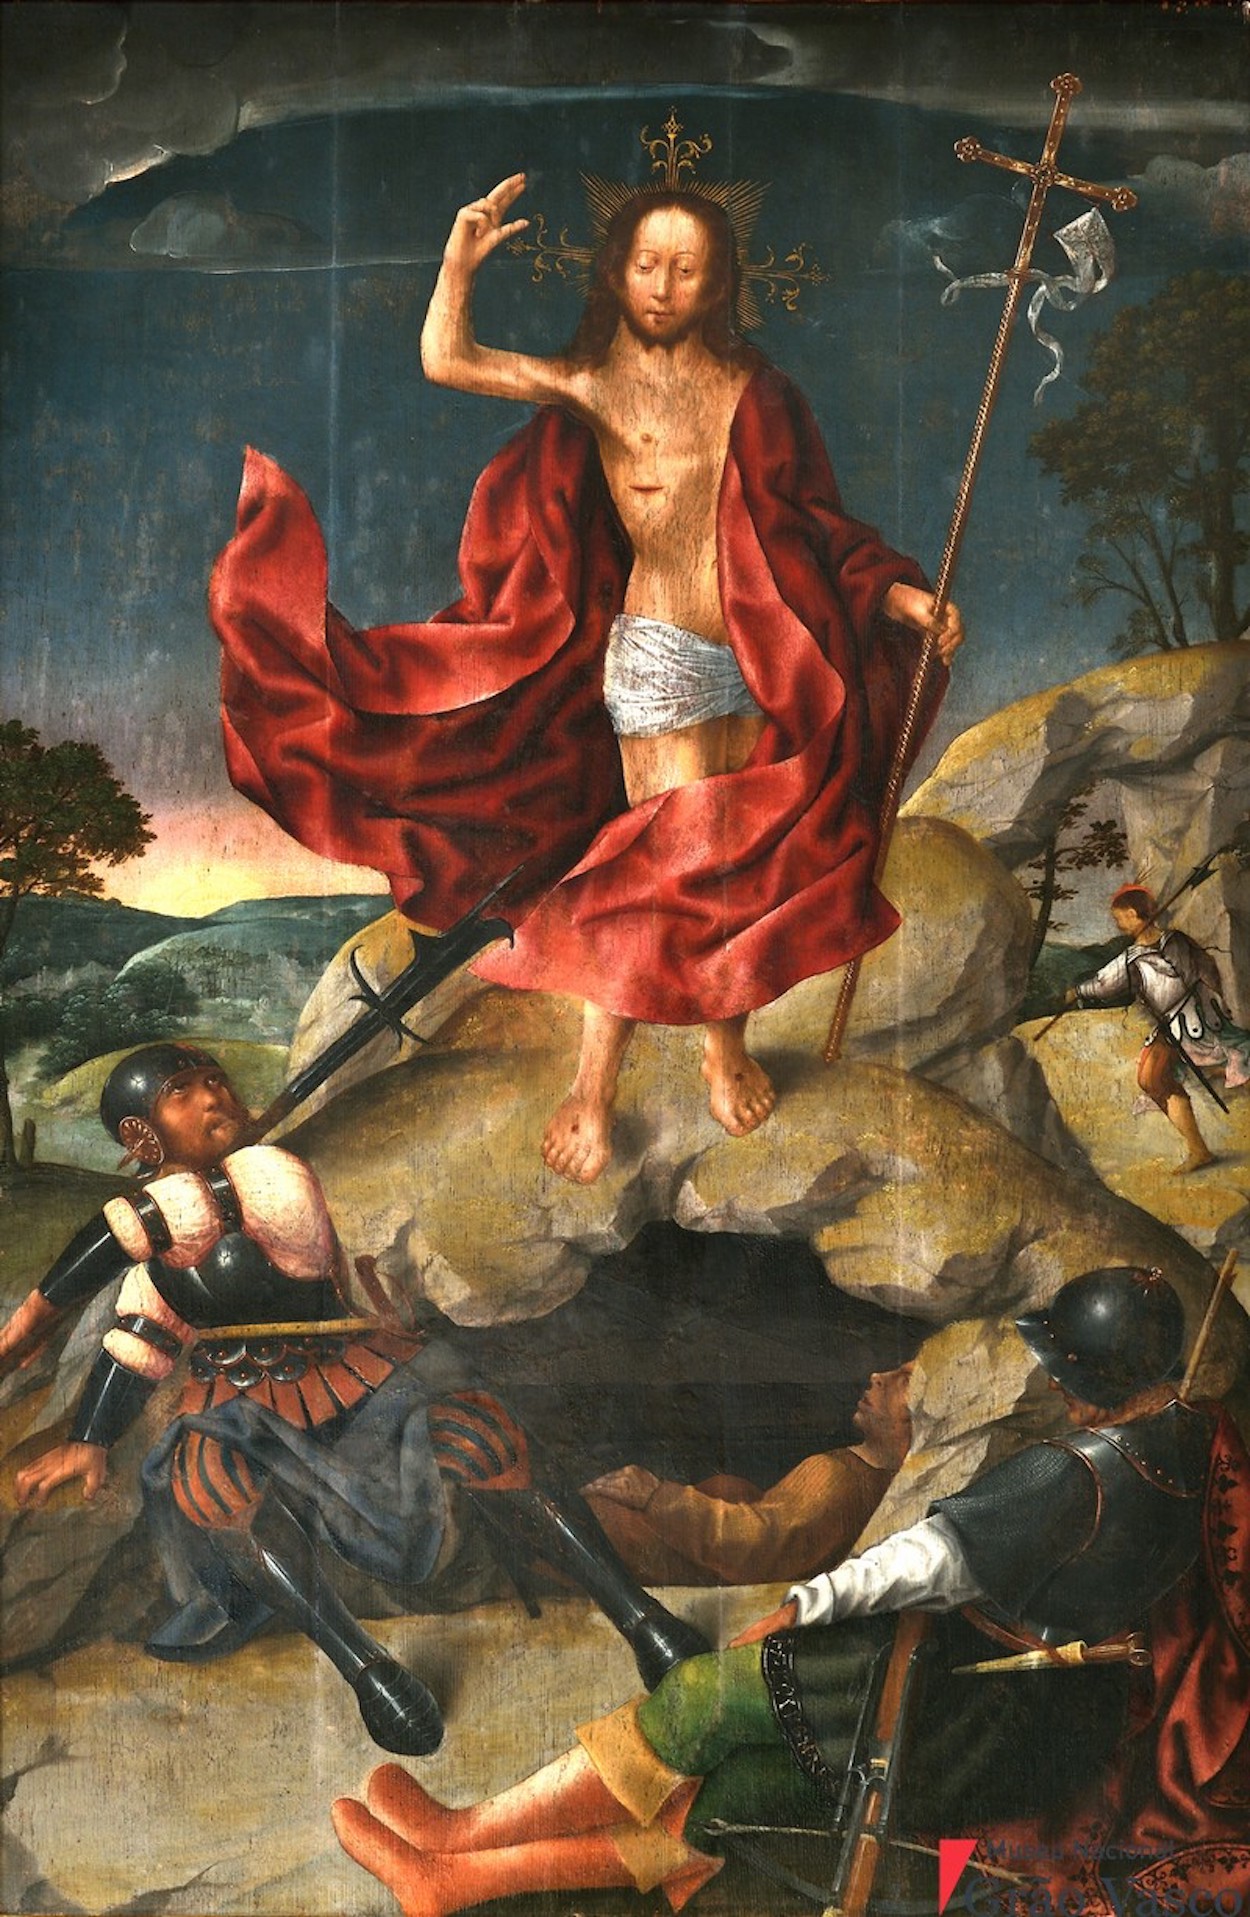 Auferstehung by Grão Vasco - 1501-1506 - 132 cm x 82 cm Grâo Vasco Nacional Museum, Viseu, Portugal